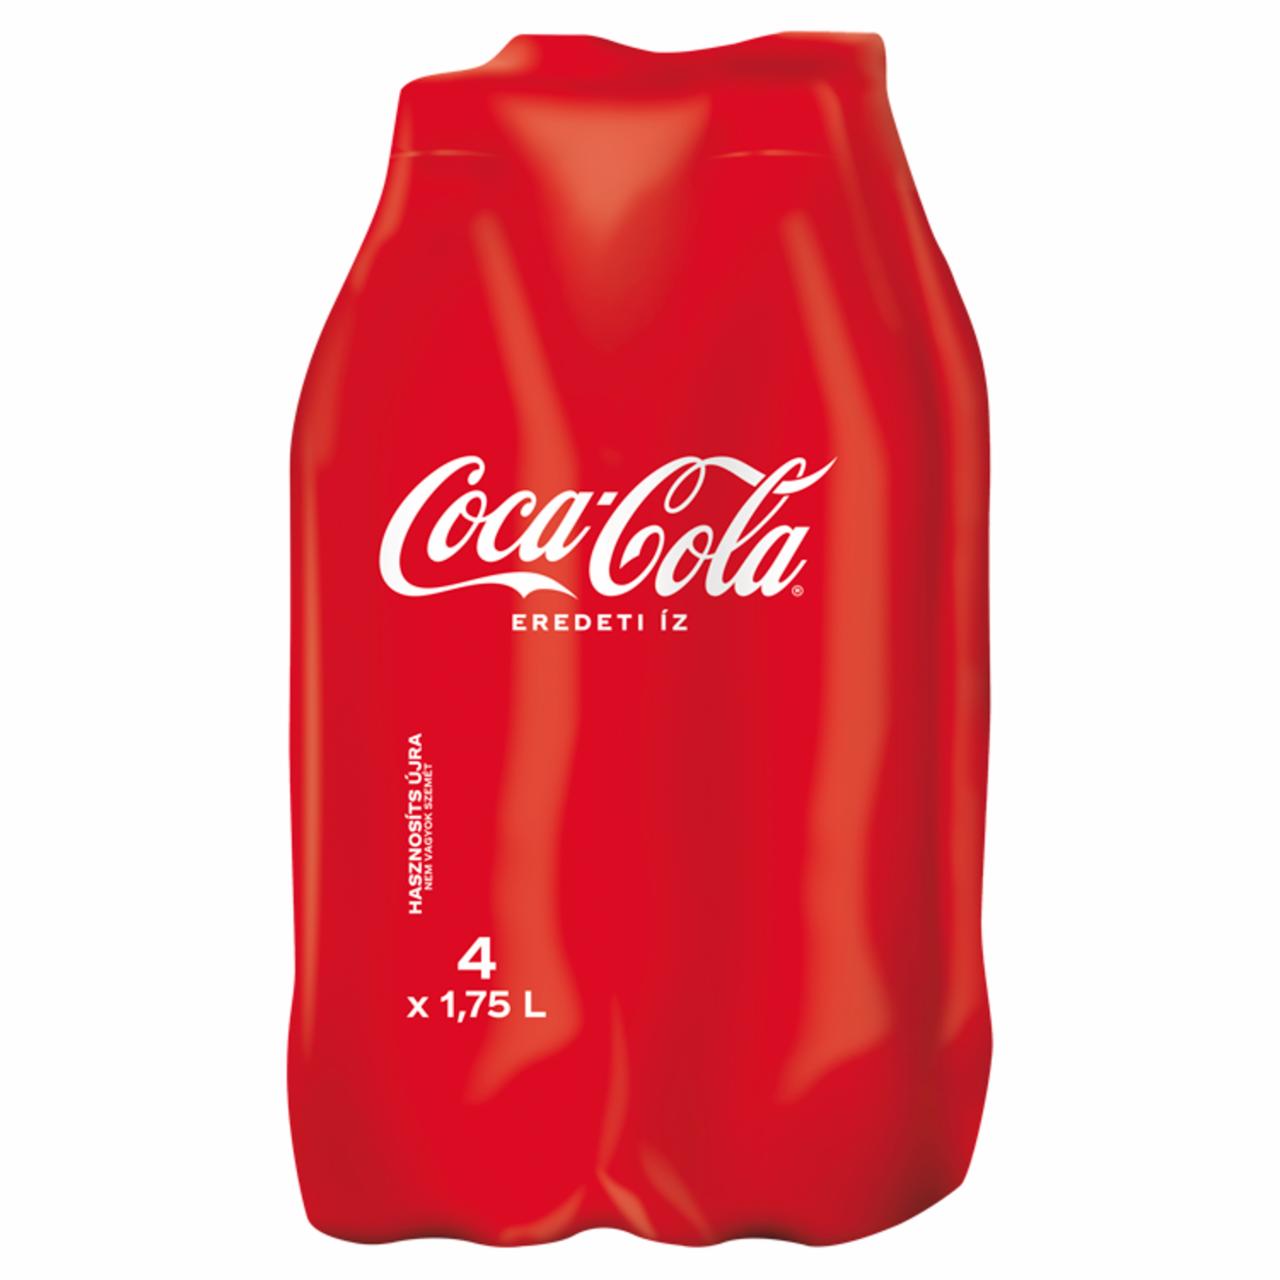 Képek - Coca-Cola colaízű szénsavas üdítőital 4 x 1,75 l